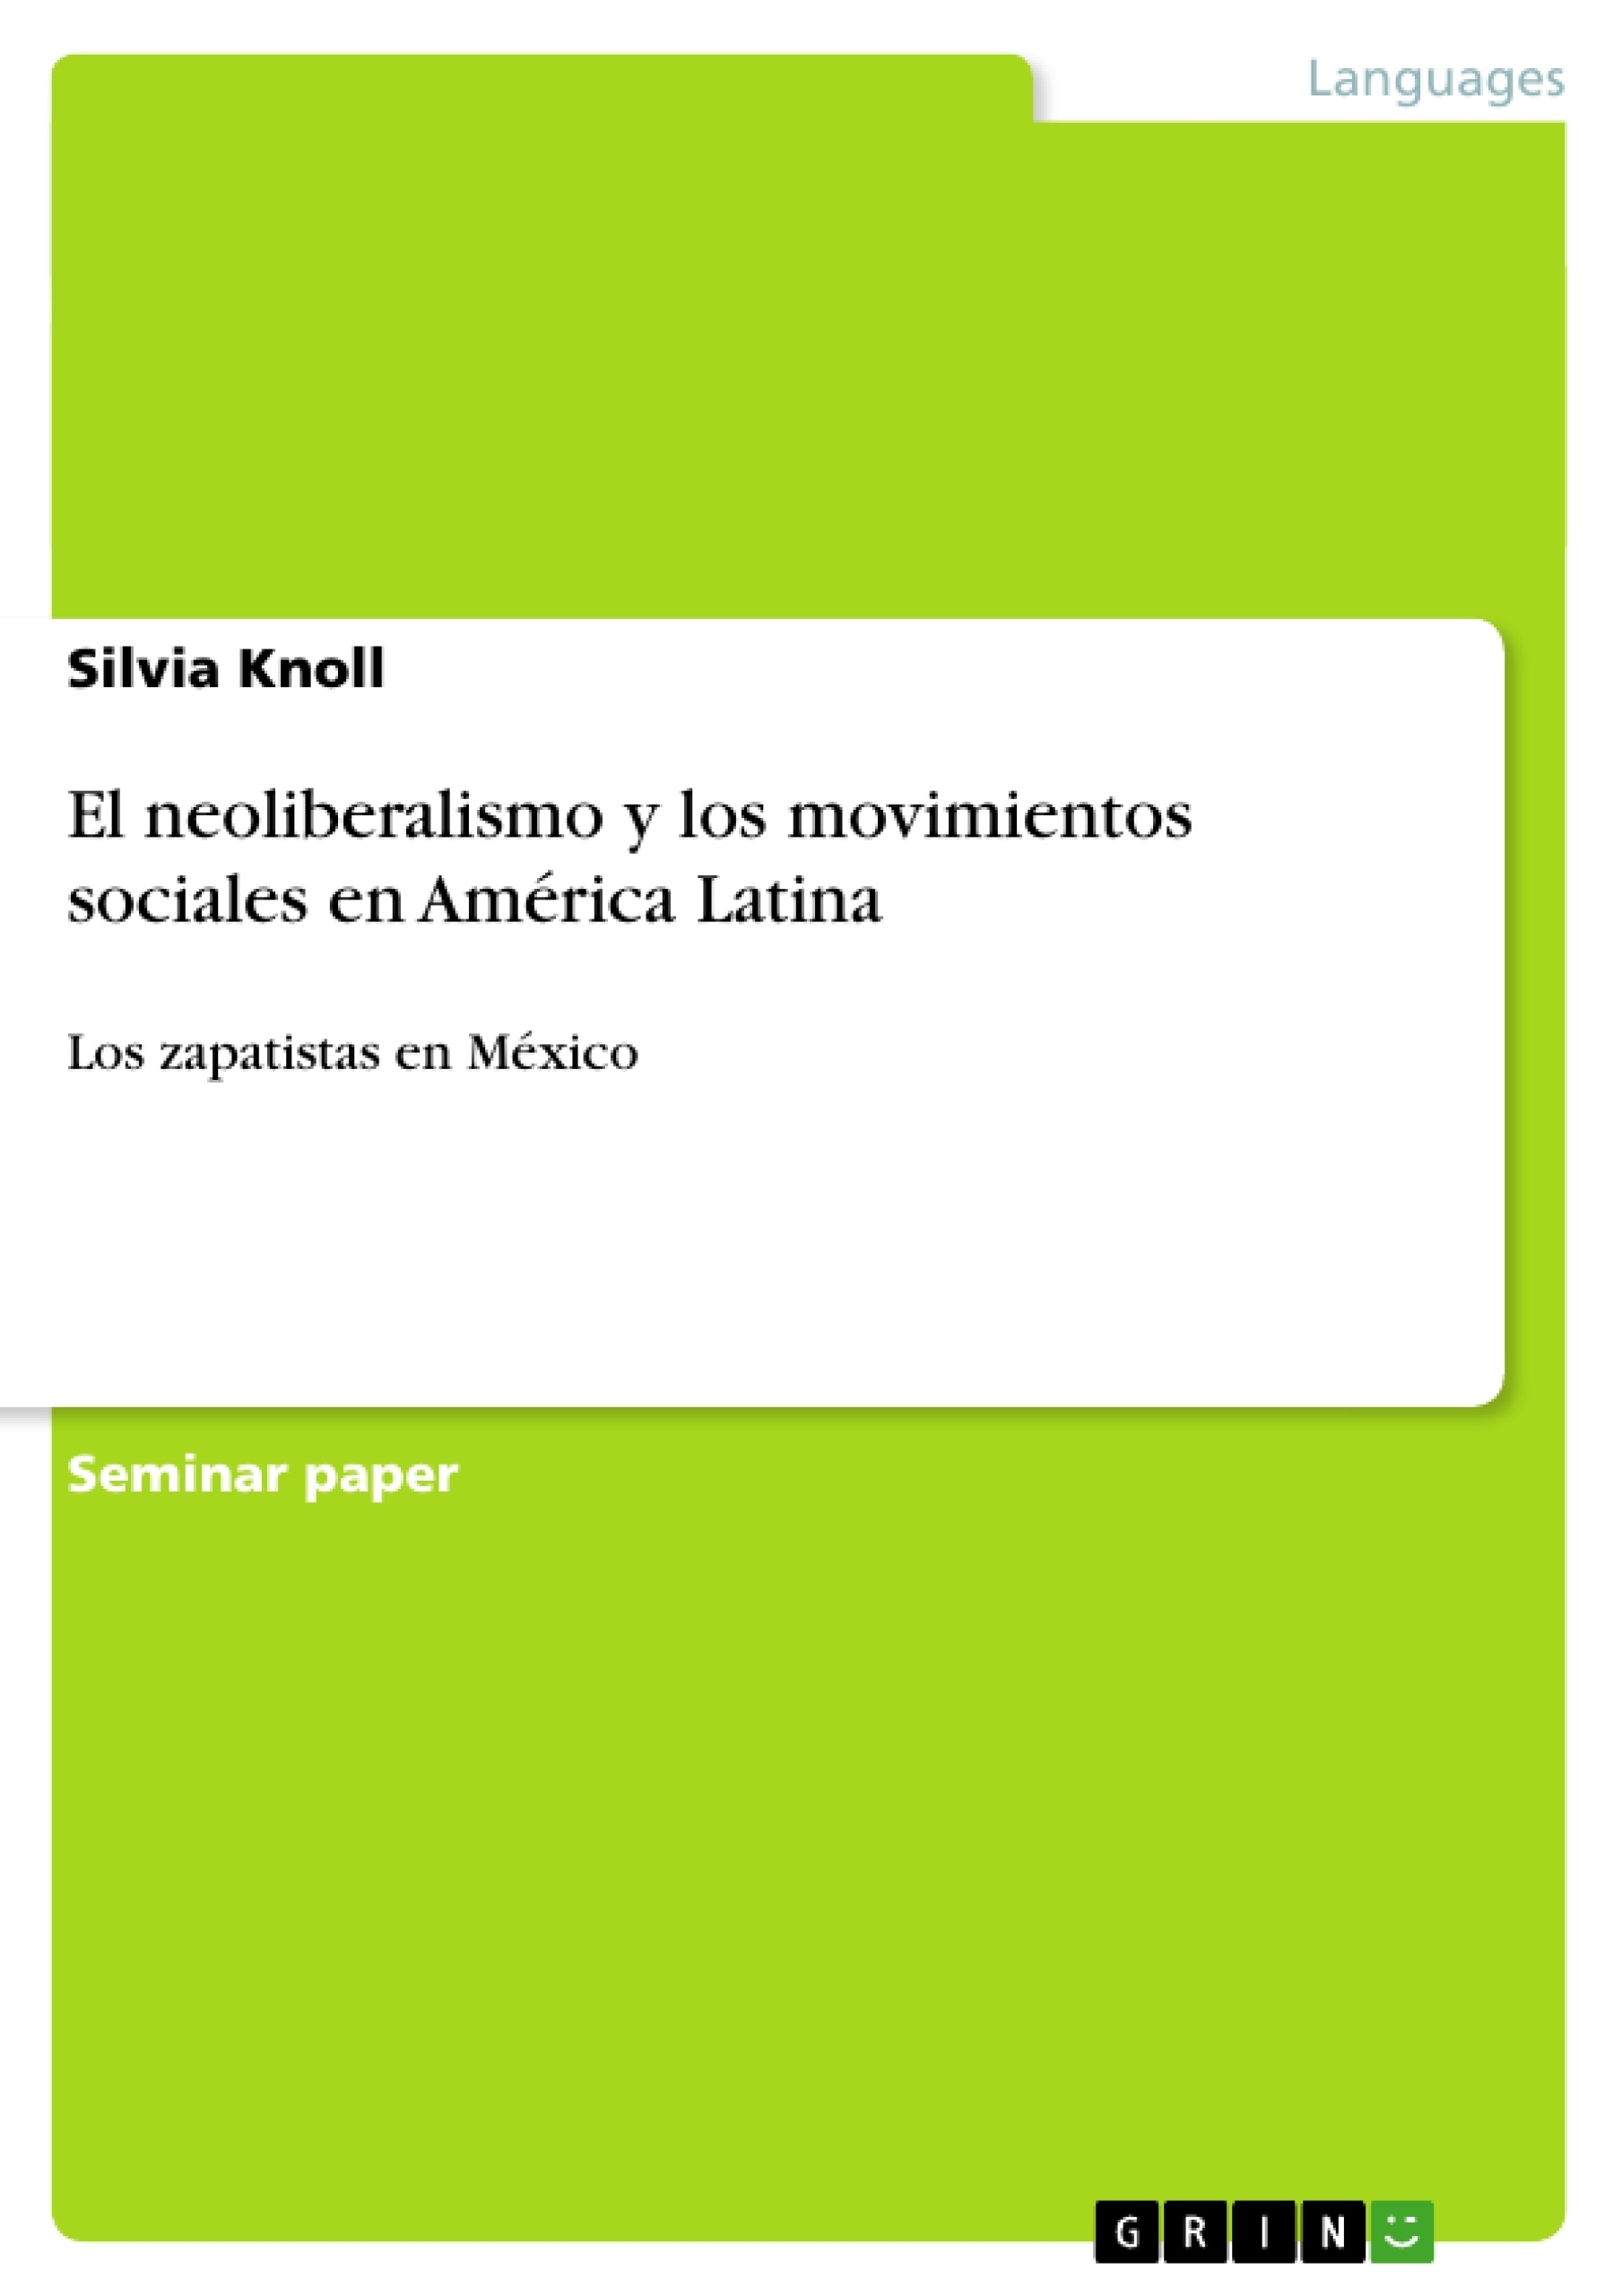 El neoliberalismo y los movimientos sociales en América Latina - GRIN